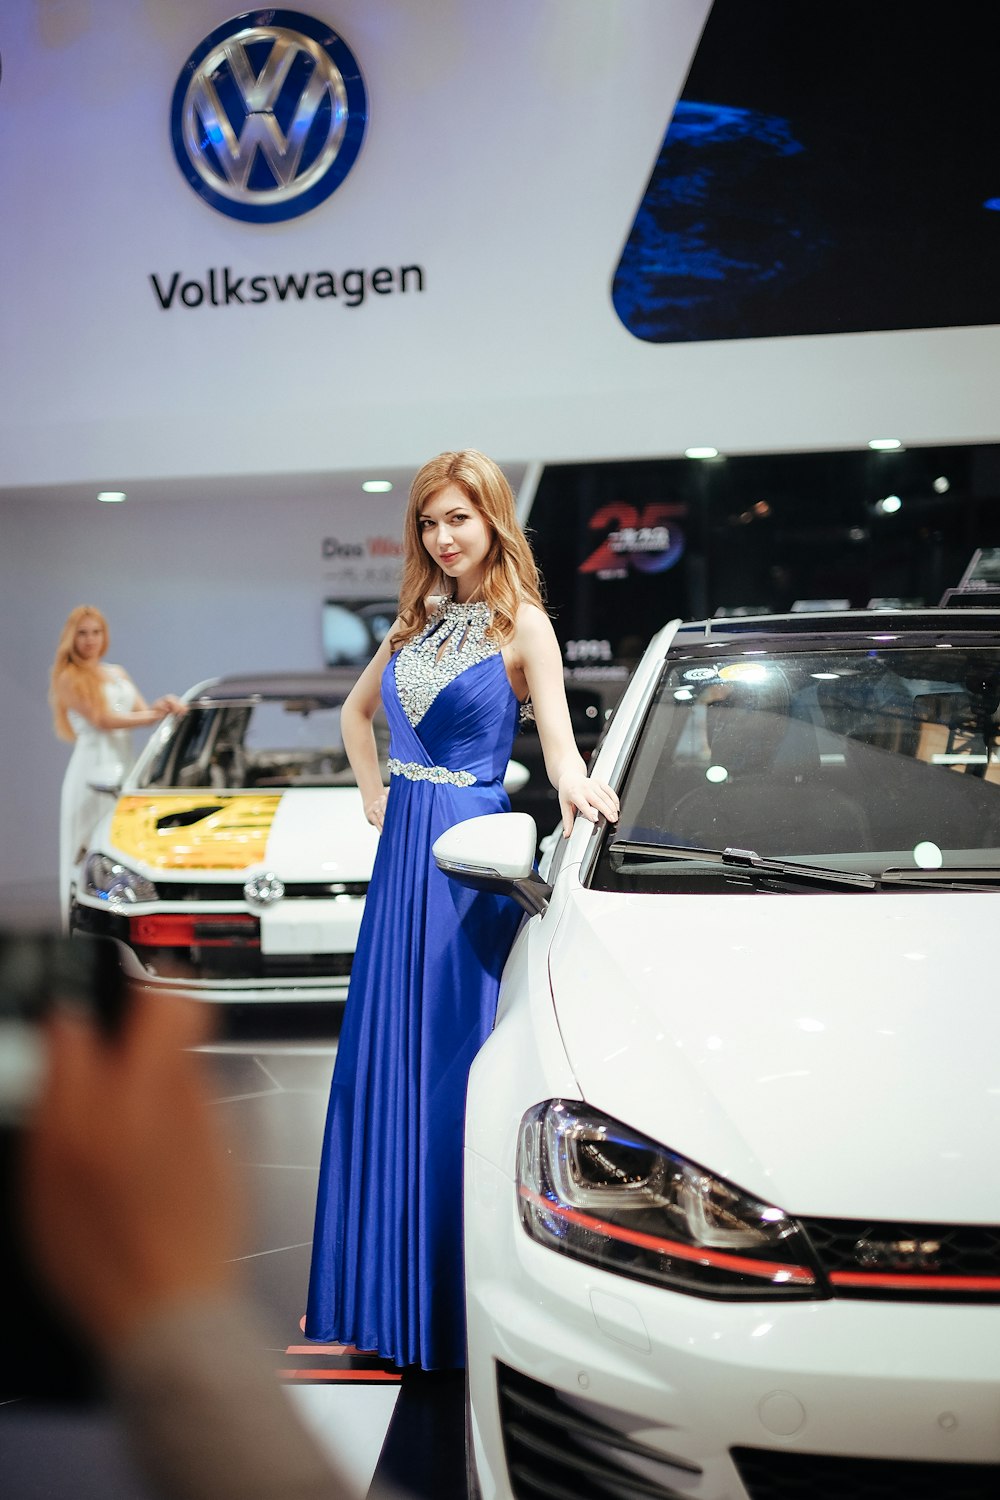 Frau steht neben Volkswagen-Auto